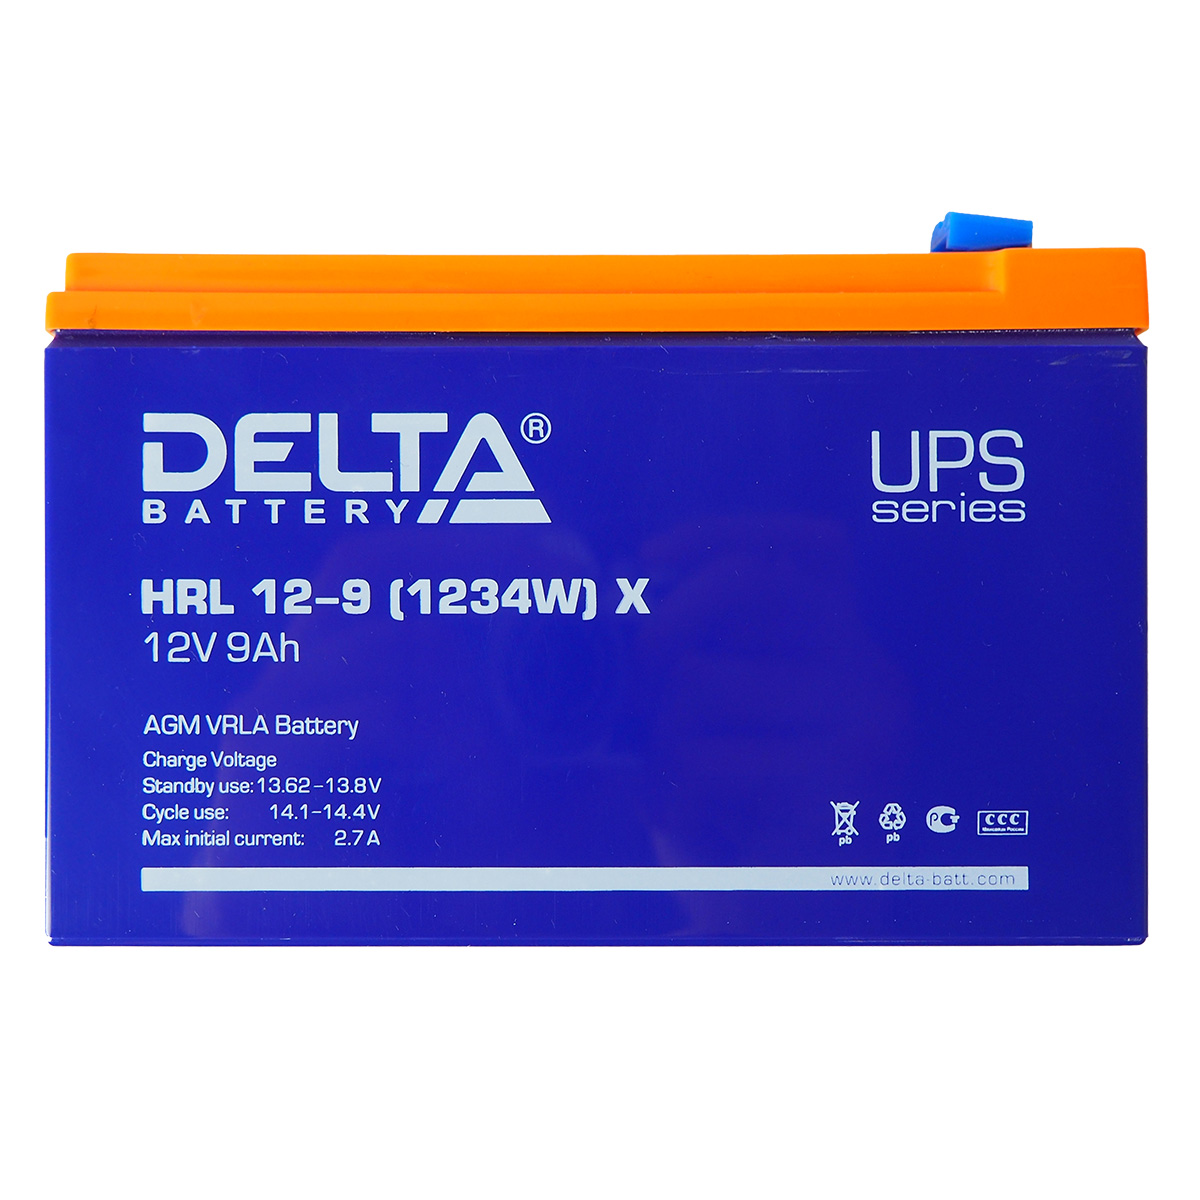 Купить аккумулятор delta hr 12-34w по выгодной цене $40